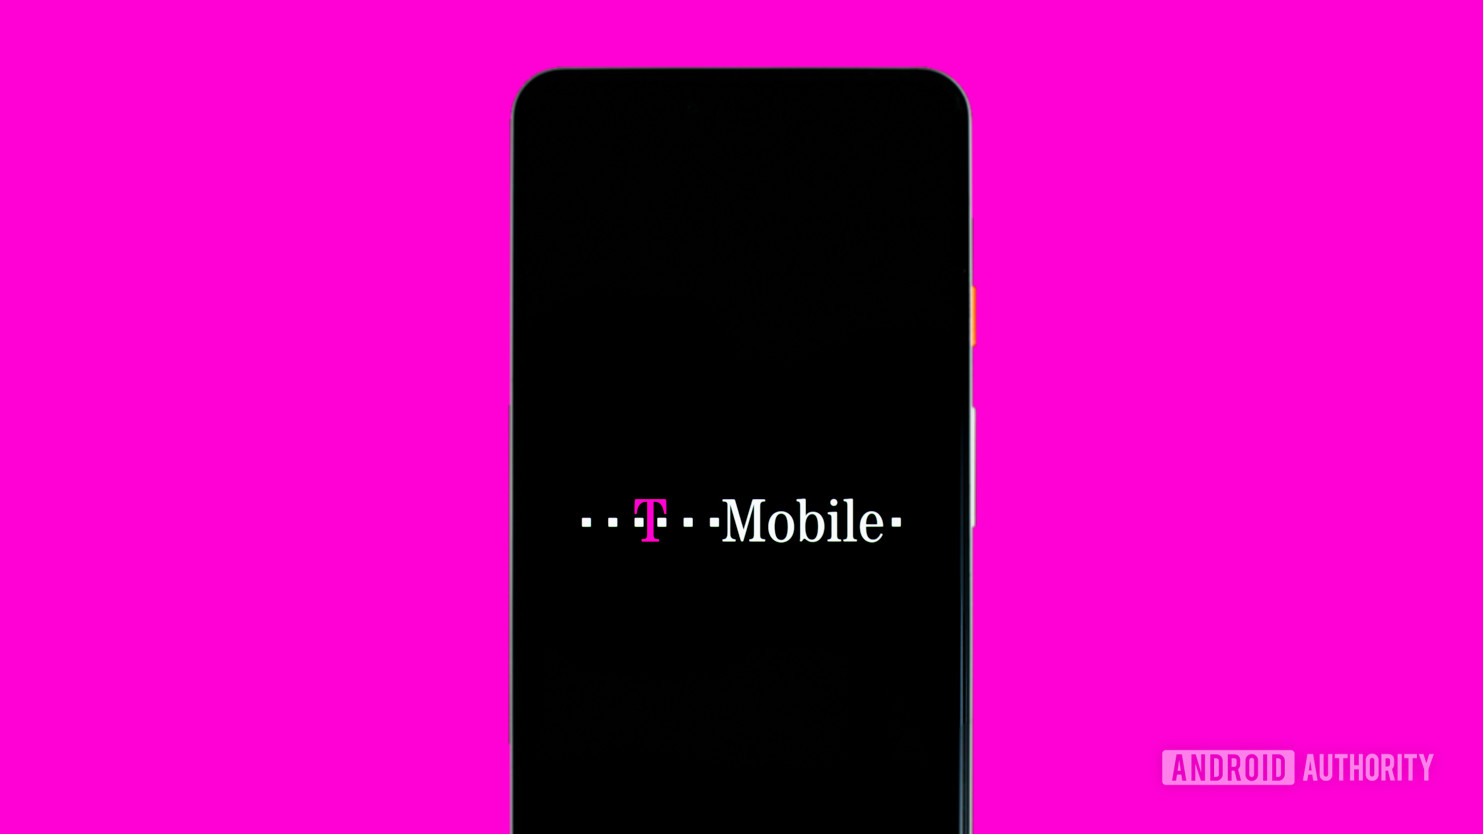 T-Mobile logo